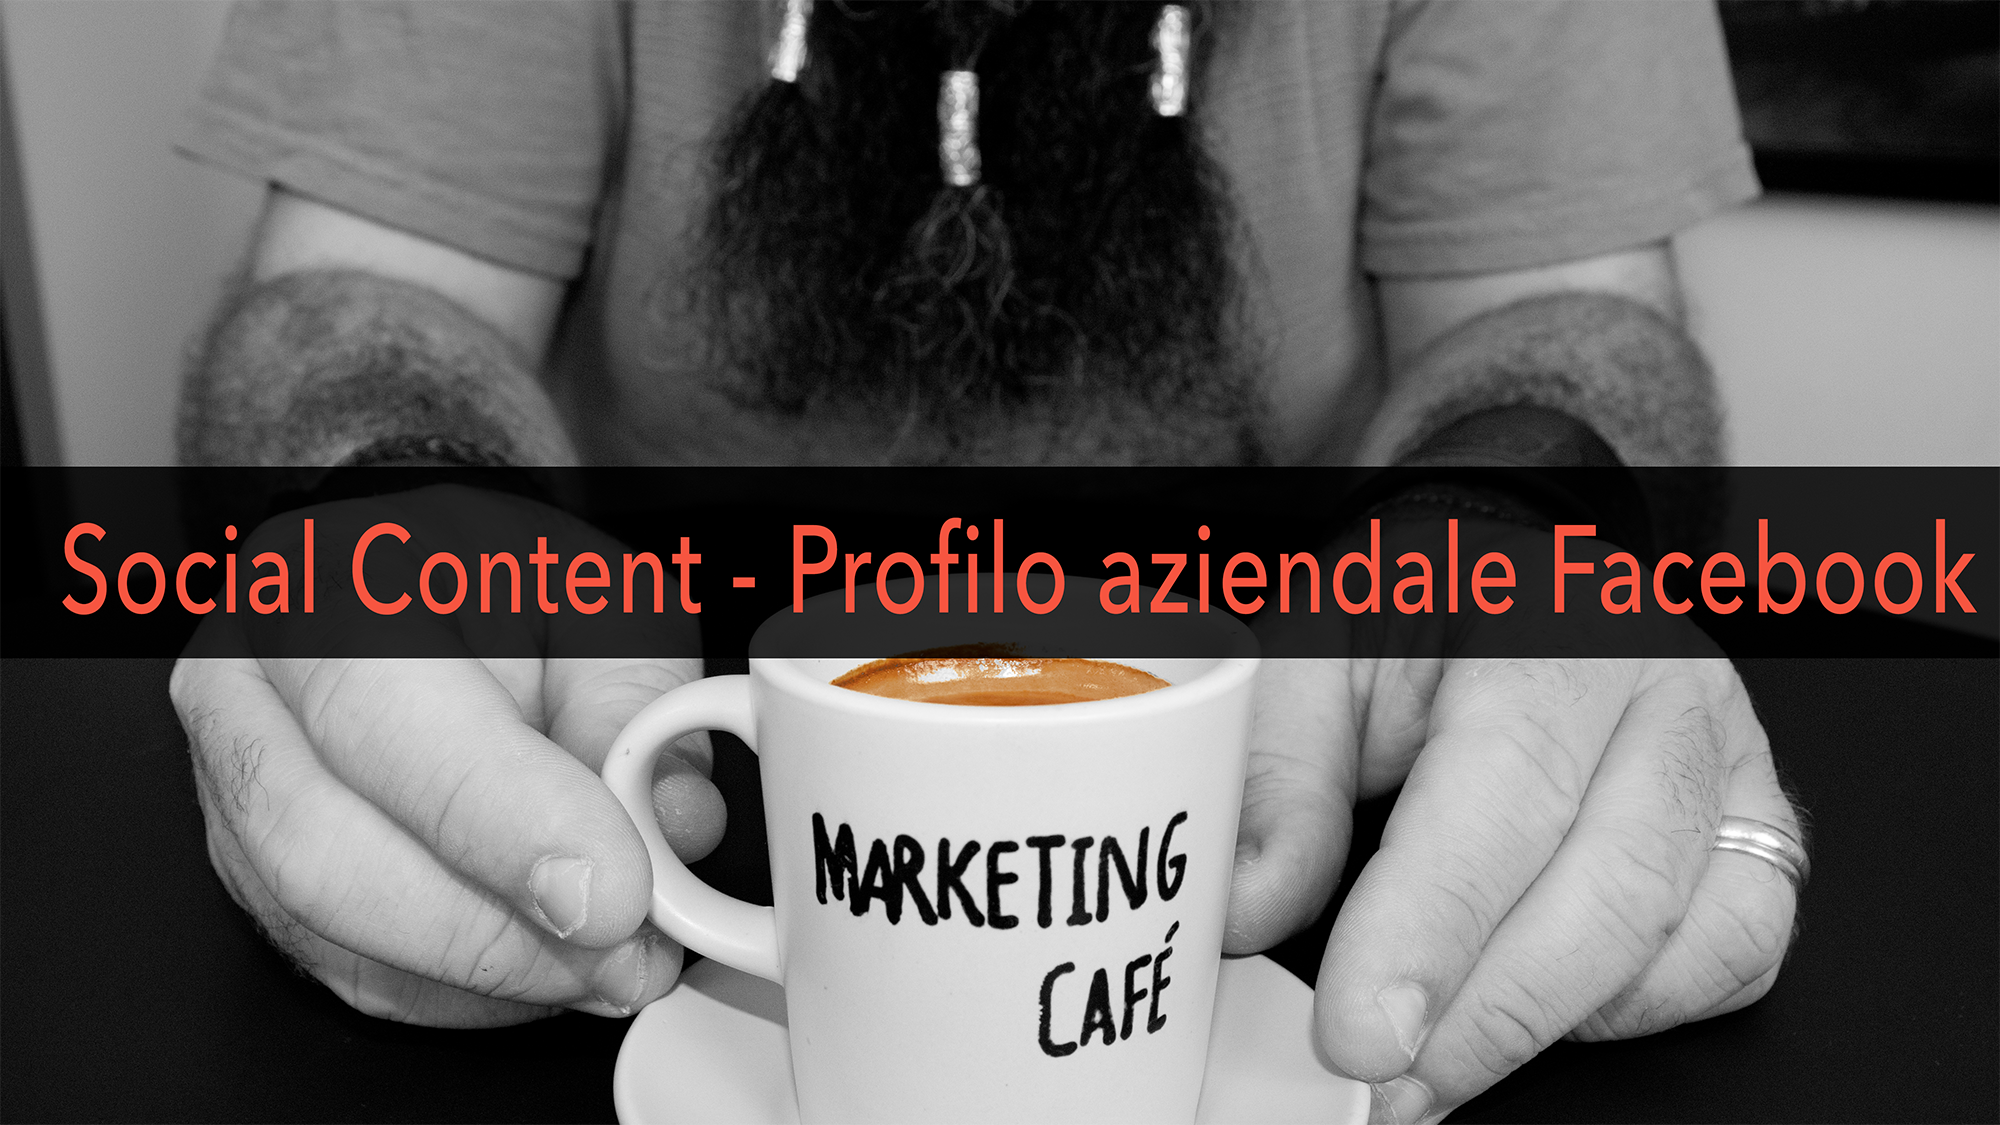 Marketing Café - Come creare contenuti social efficaci - Profilo aziendale su Facebook